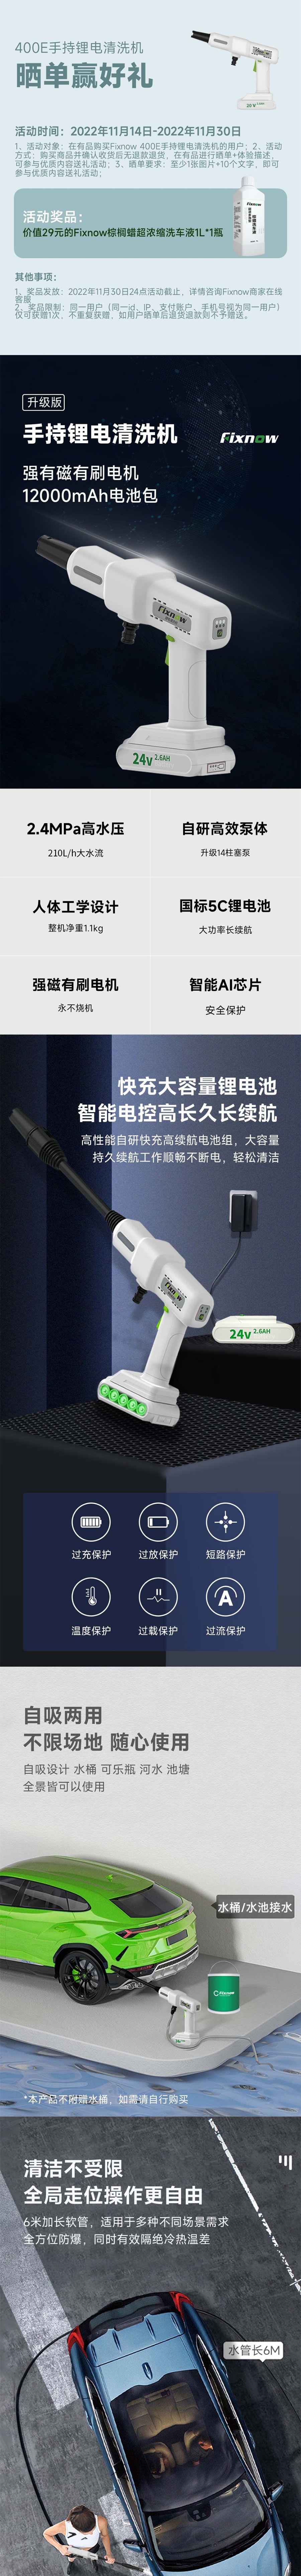 【中國直郵】小米有品 Fixnow 400E手持鋰電清洗機 基本款